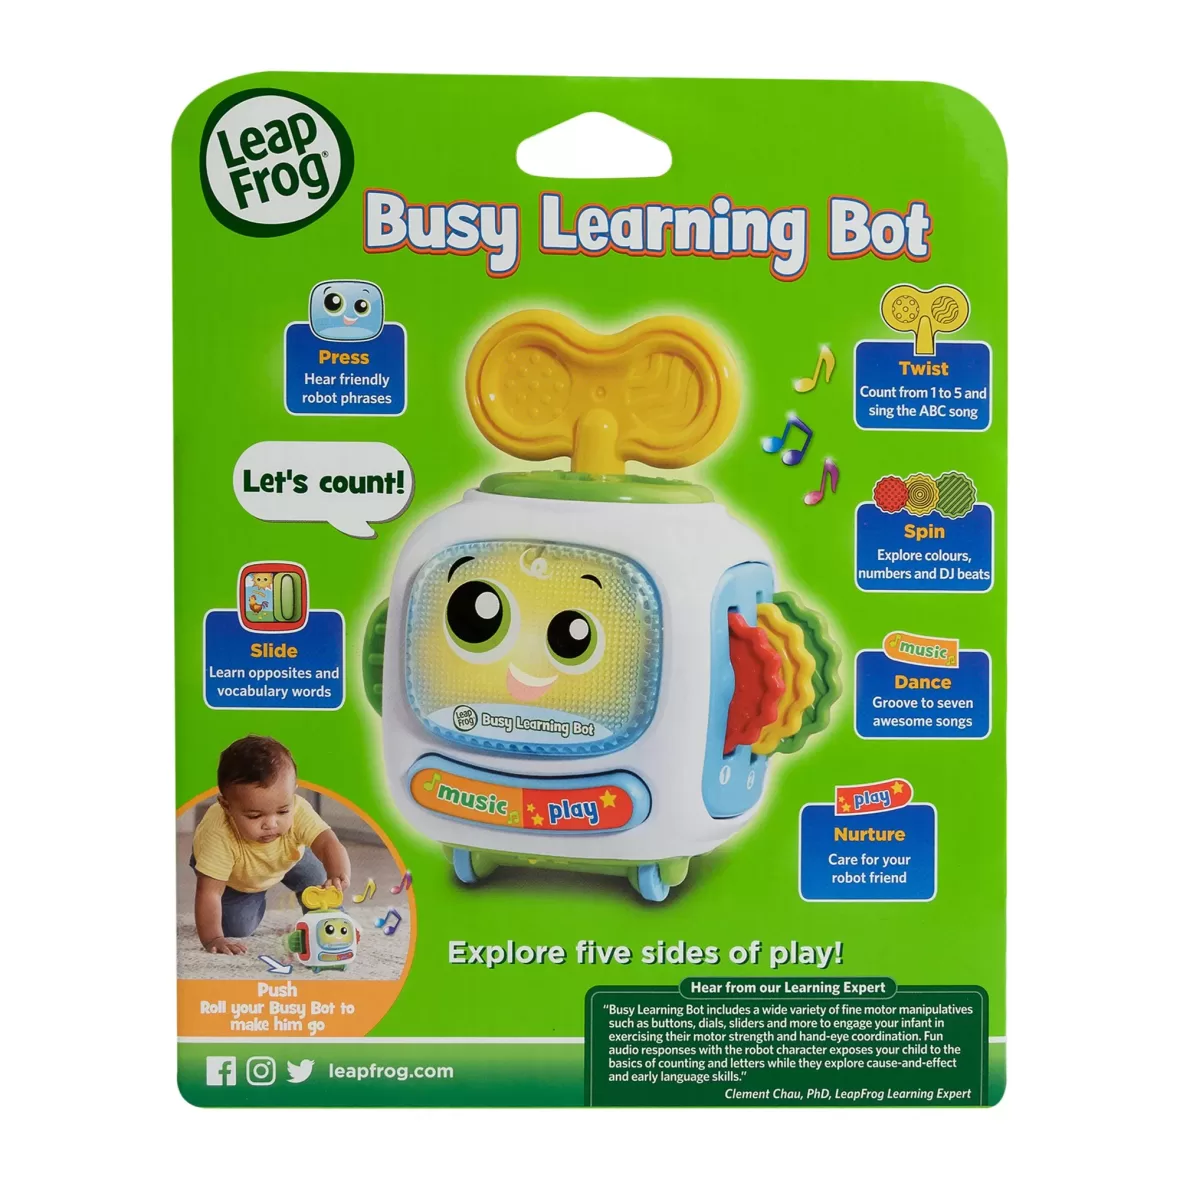 Leapfrog_Busy Learning BOT_4